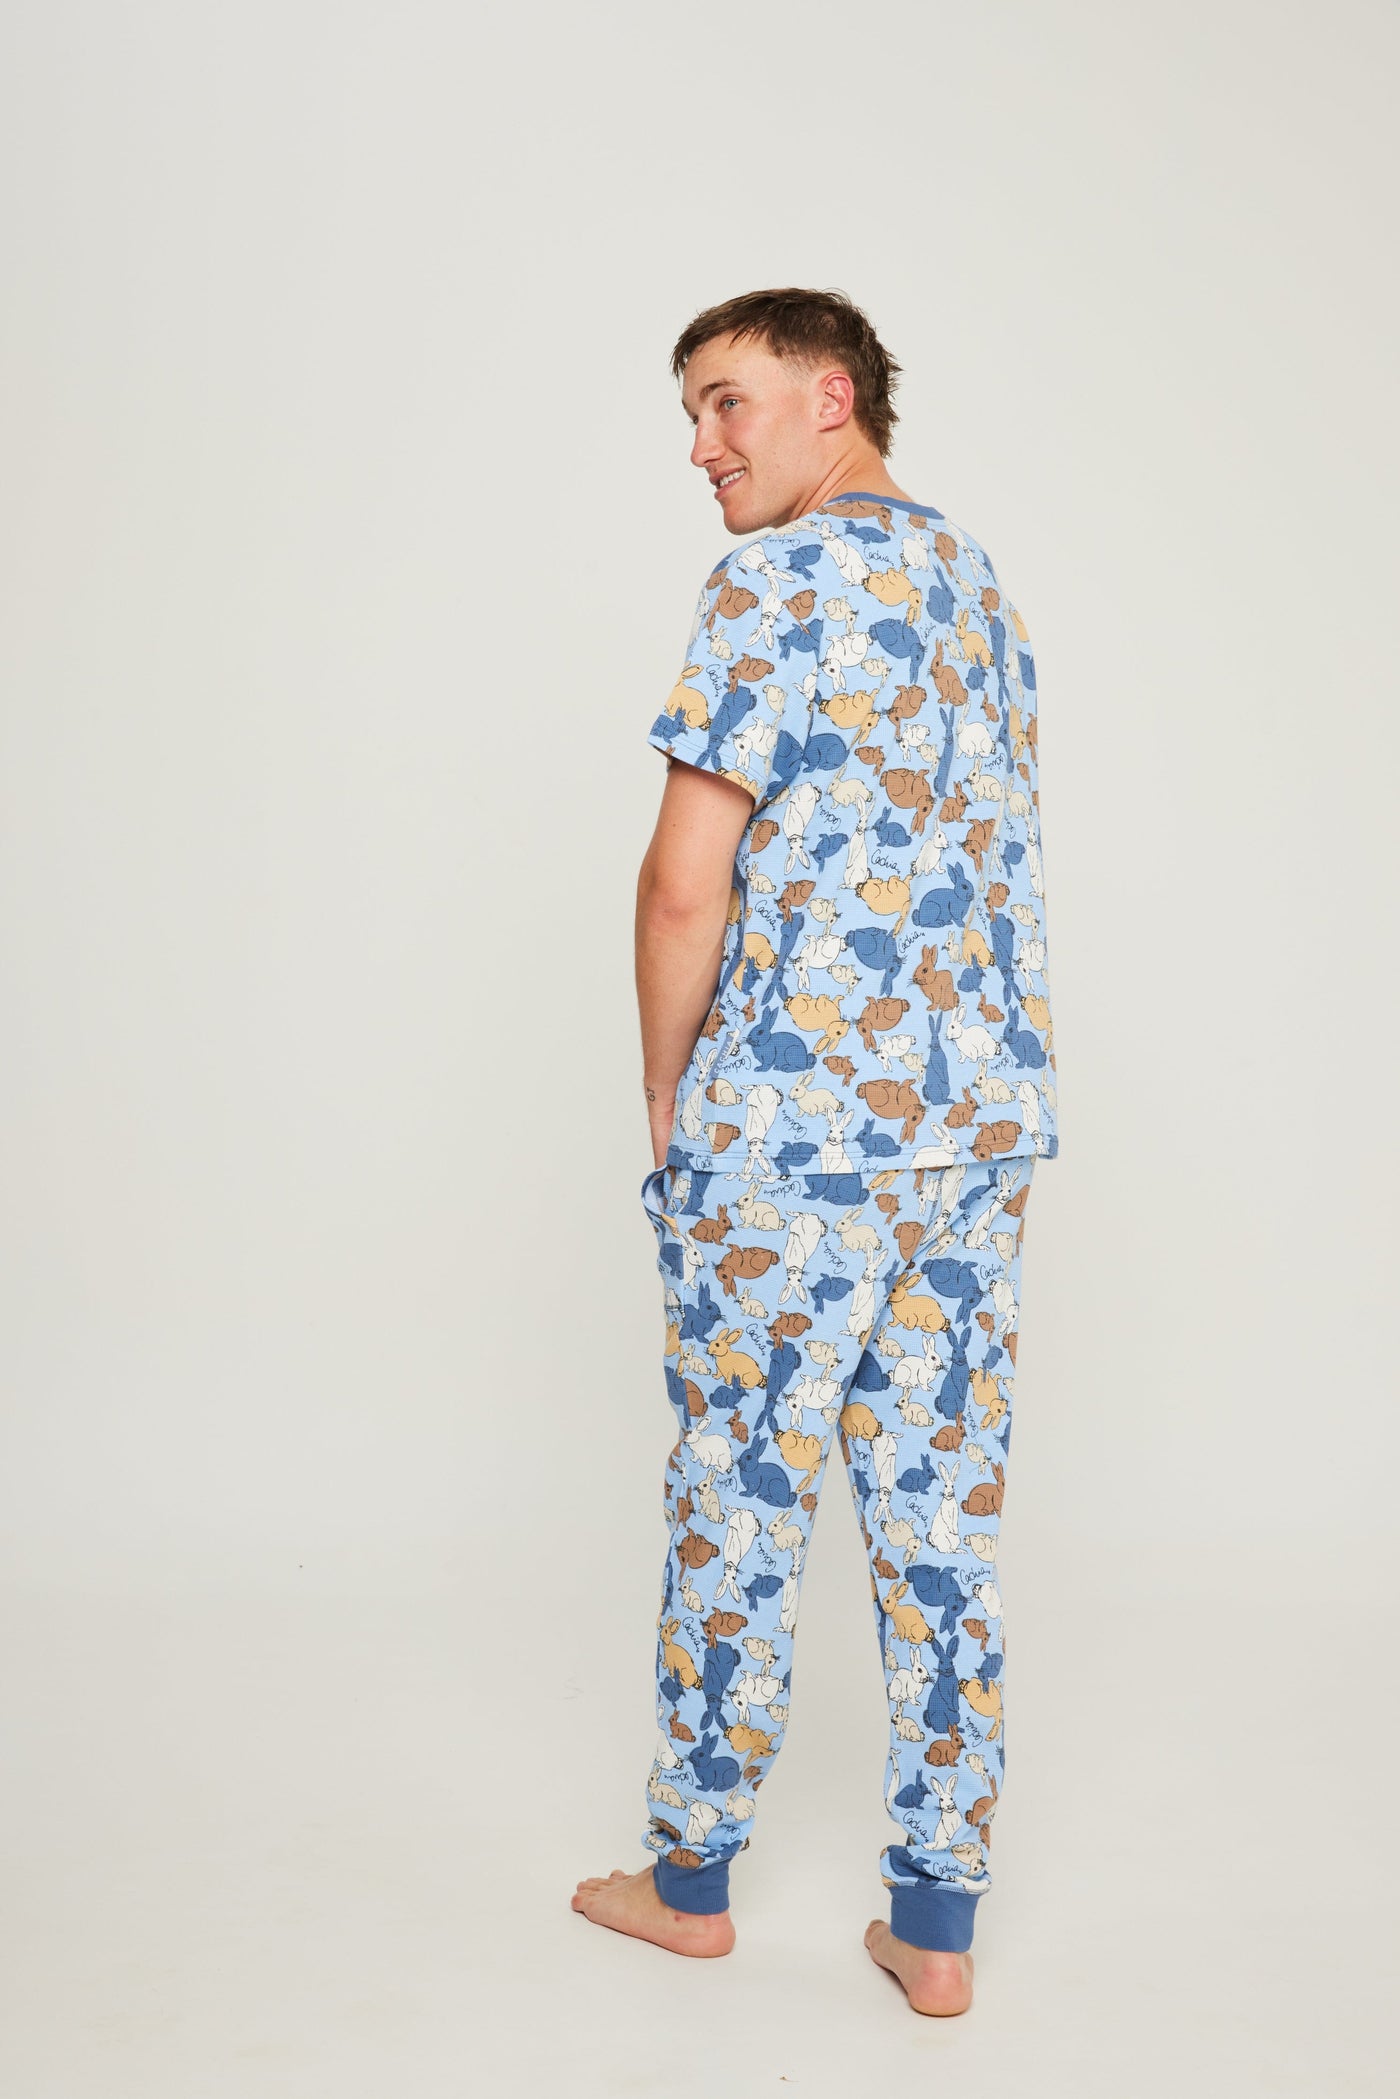 Cachia Cotton Tail - Mens Pajamas